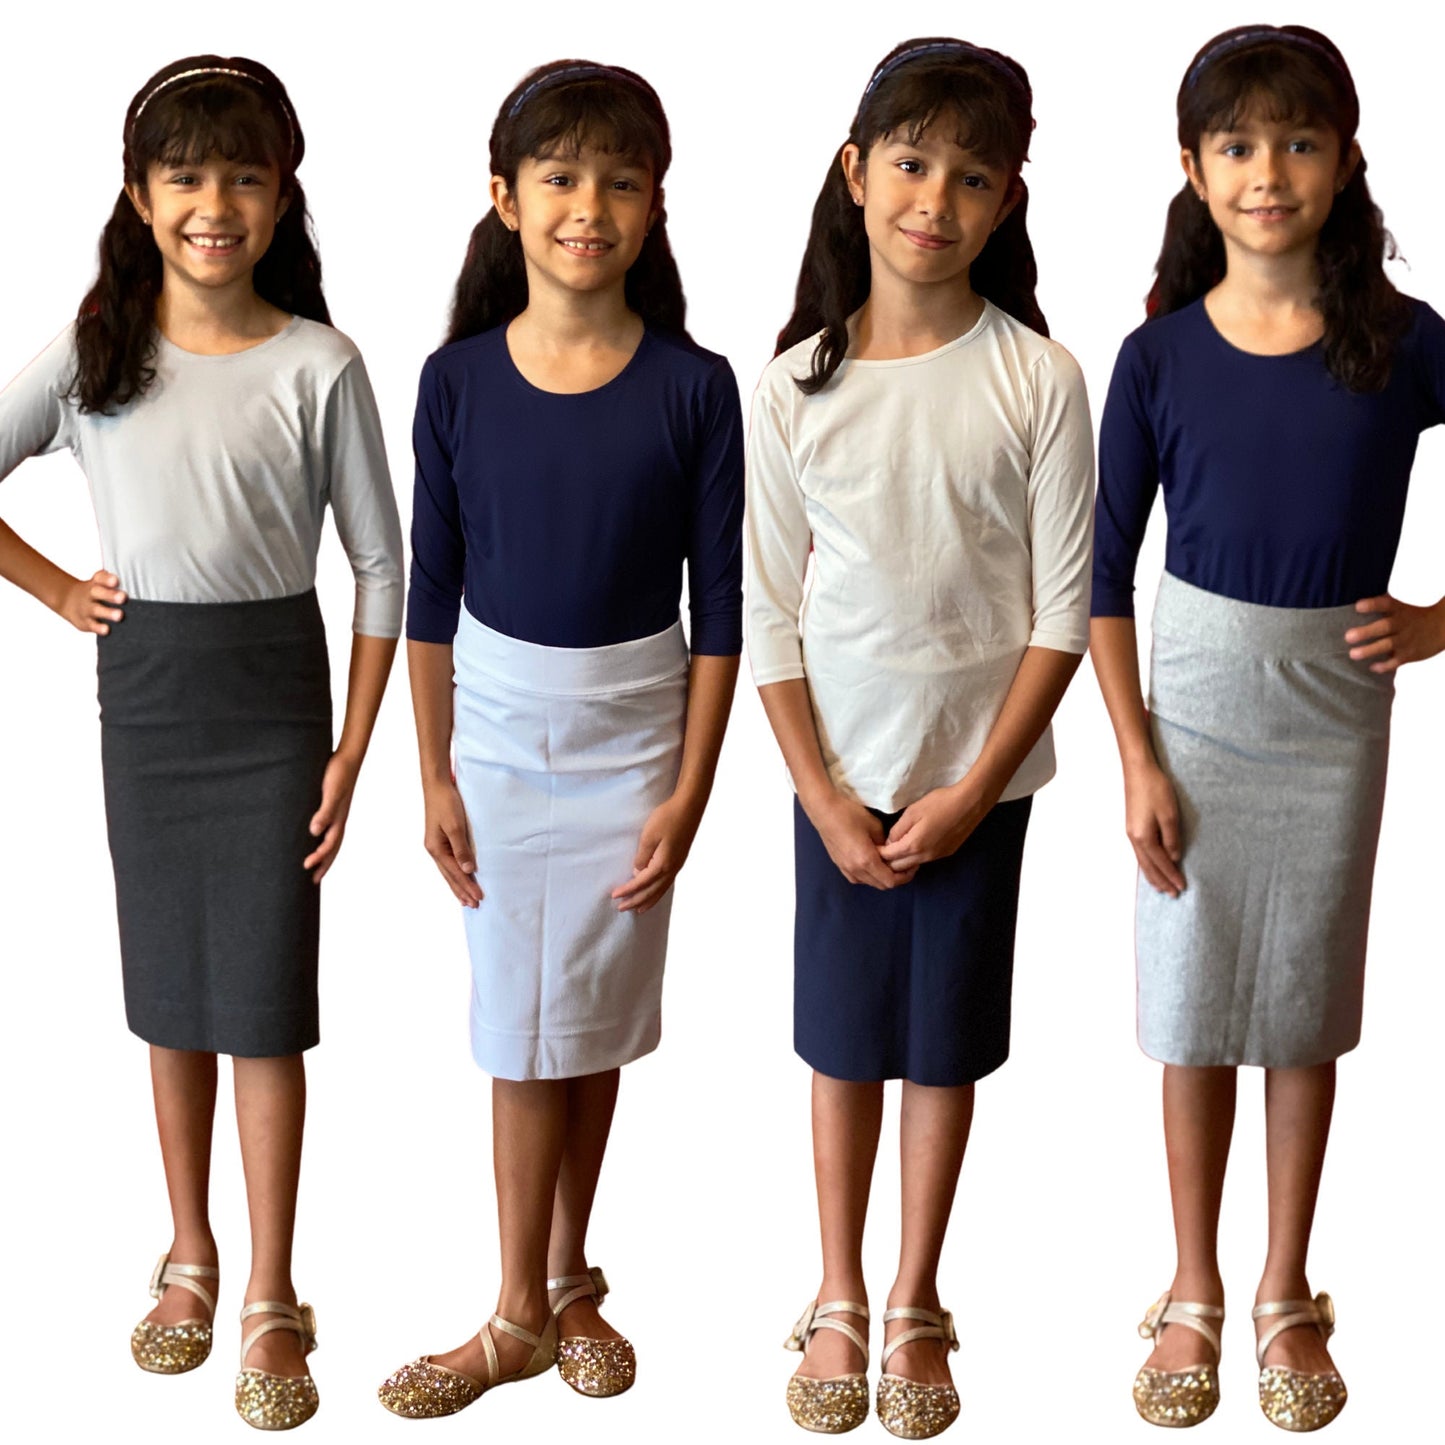 Girl Midi Skirt / Modest Skirt / Knee Length Skirt / Heather Grey Skirt for School / School Uniform Skirt /Grey Skirt Sz 6-16 / tzniut skirt